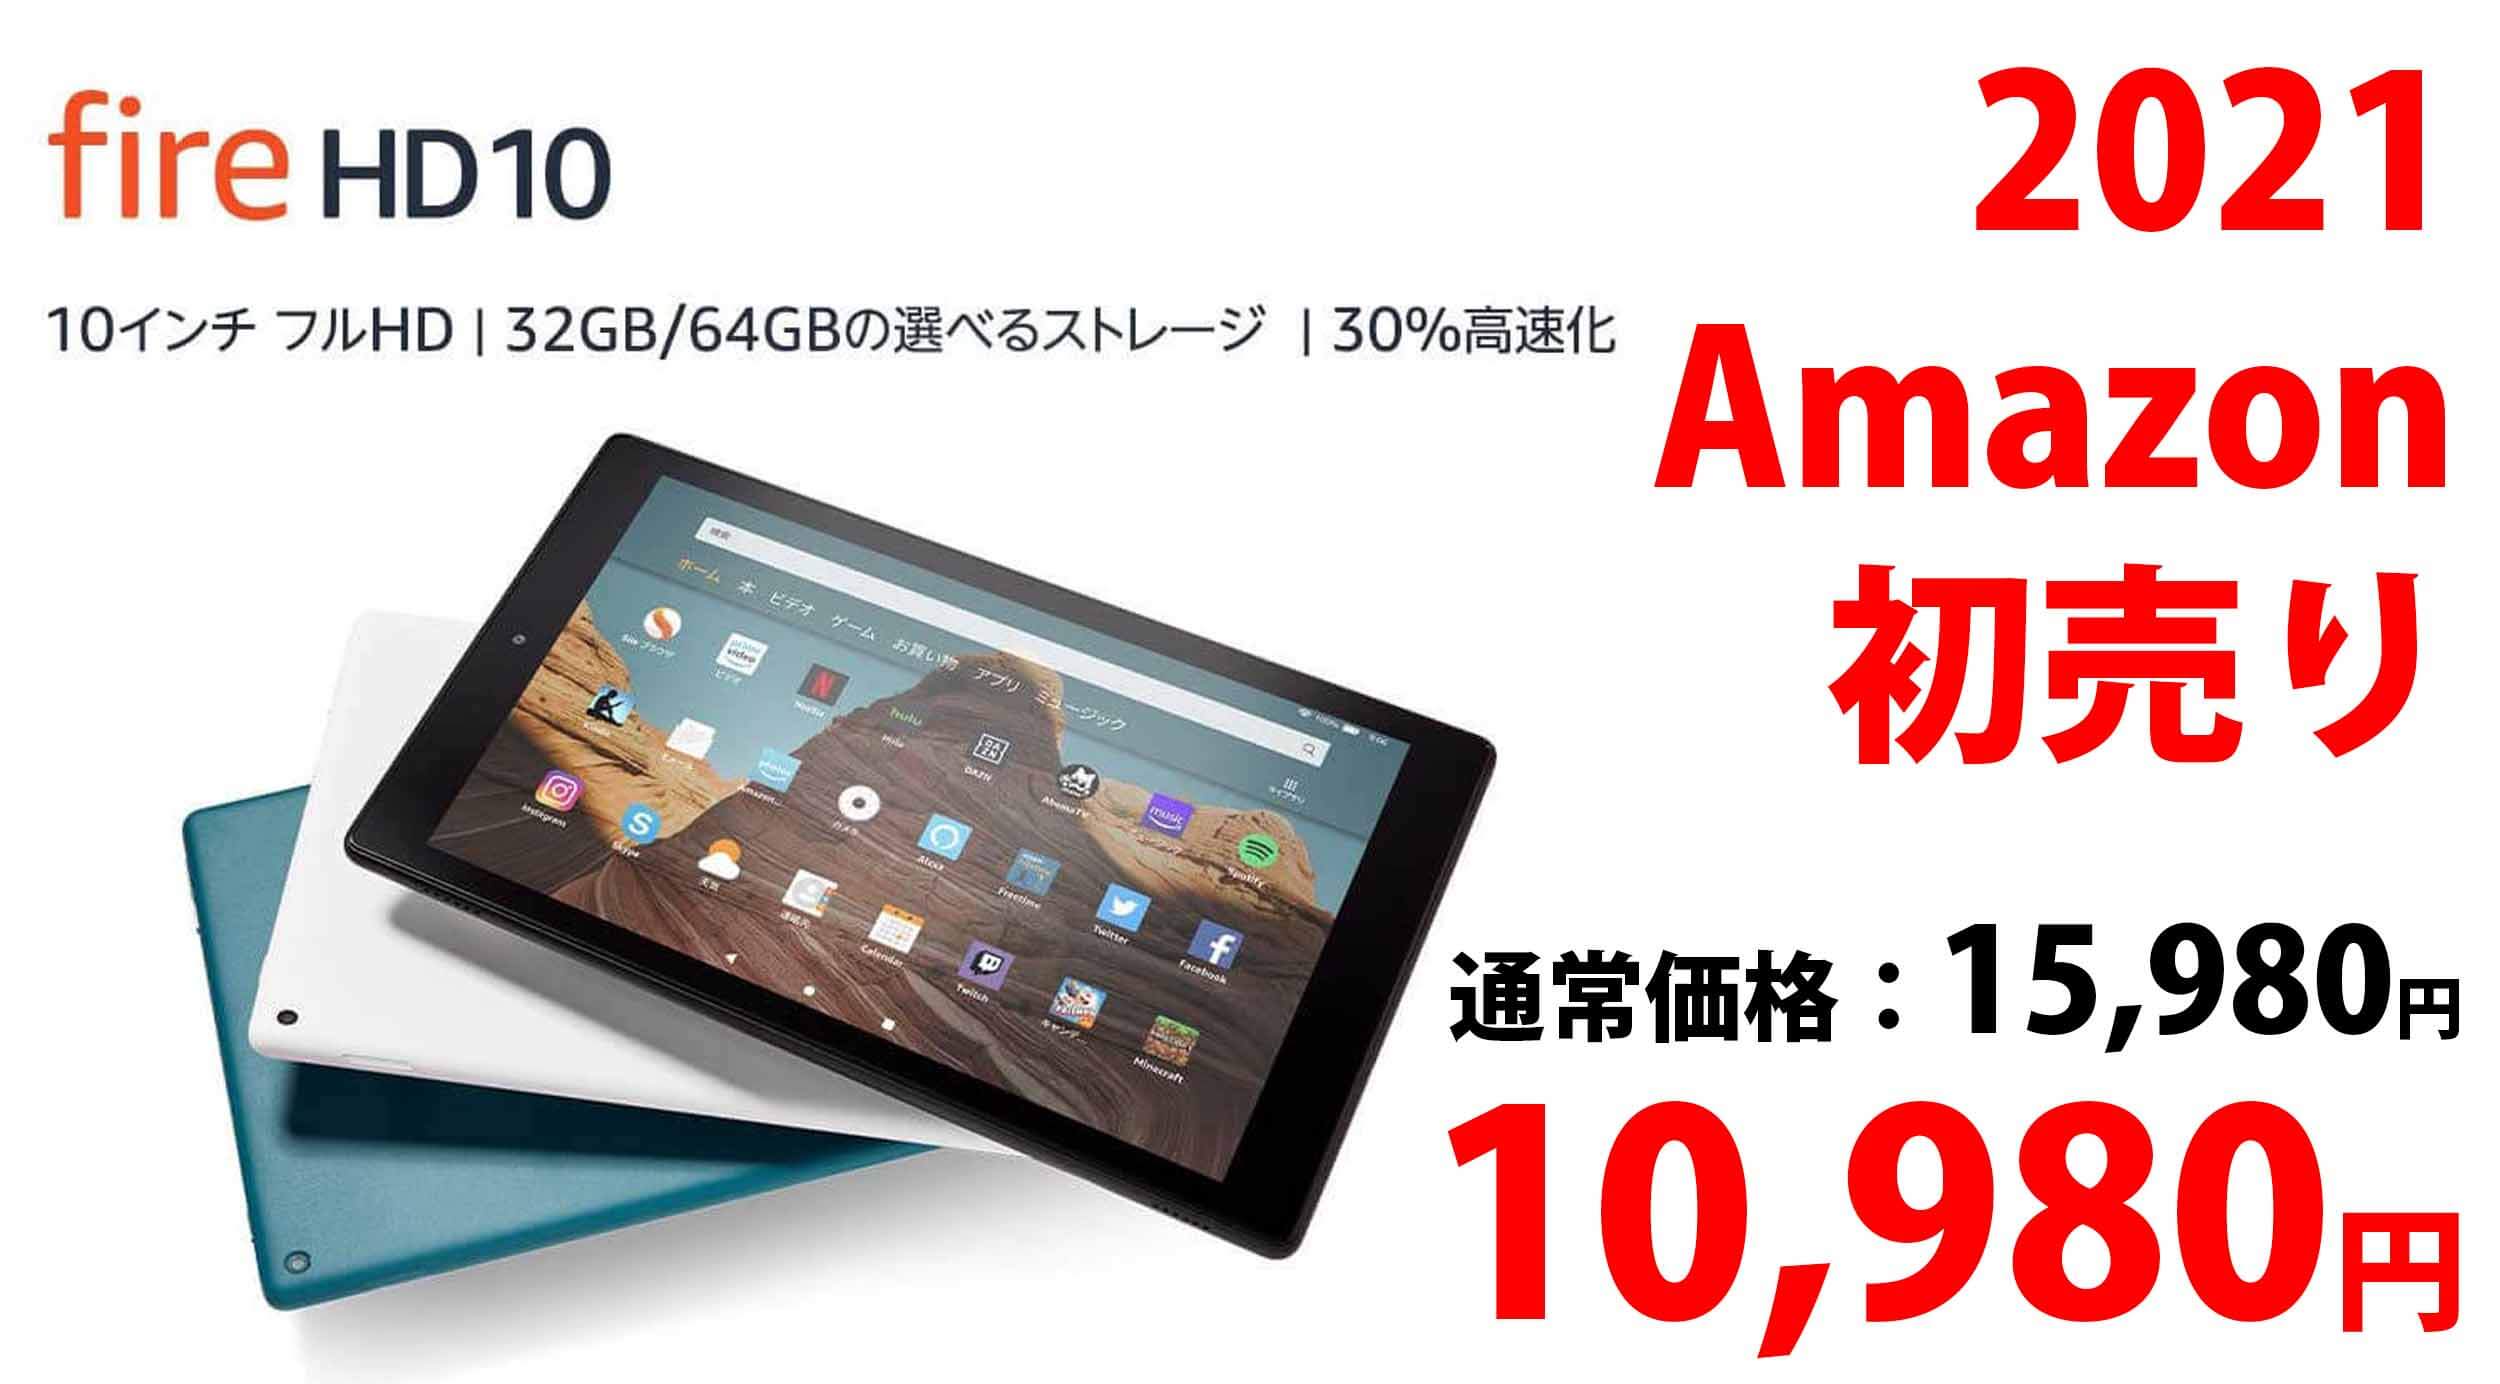 10.1インチのフルHDタブレット！Fire HD 10がAmazon初売りで10,980円！高解像度モデルが安すぎる！